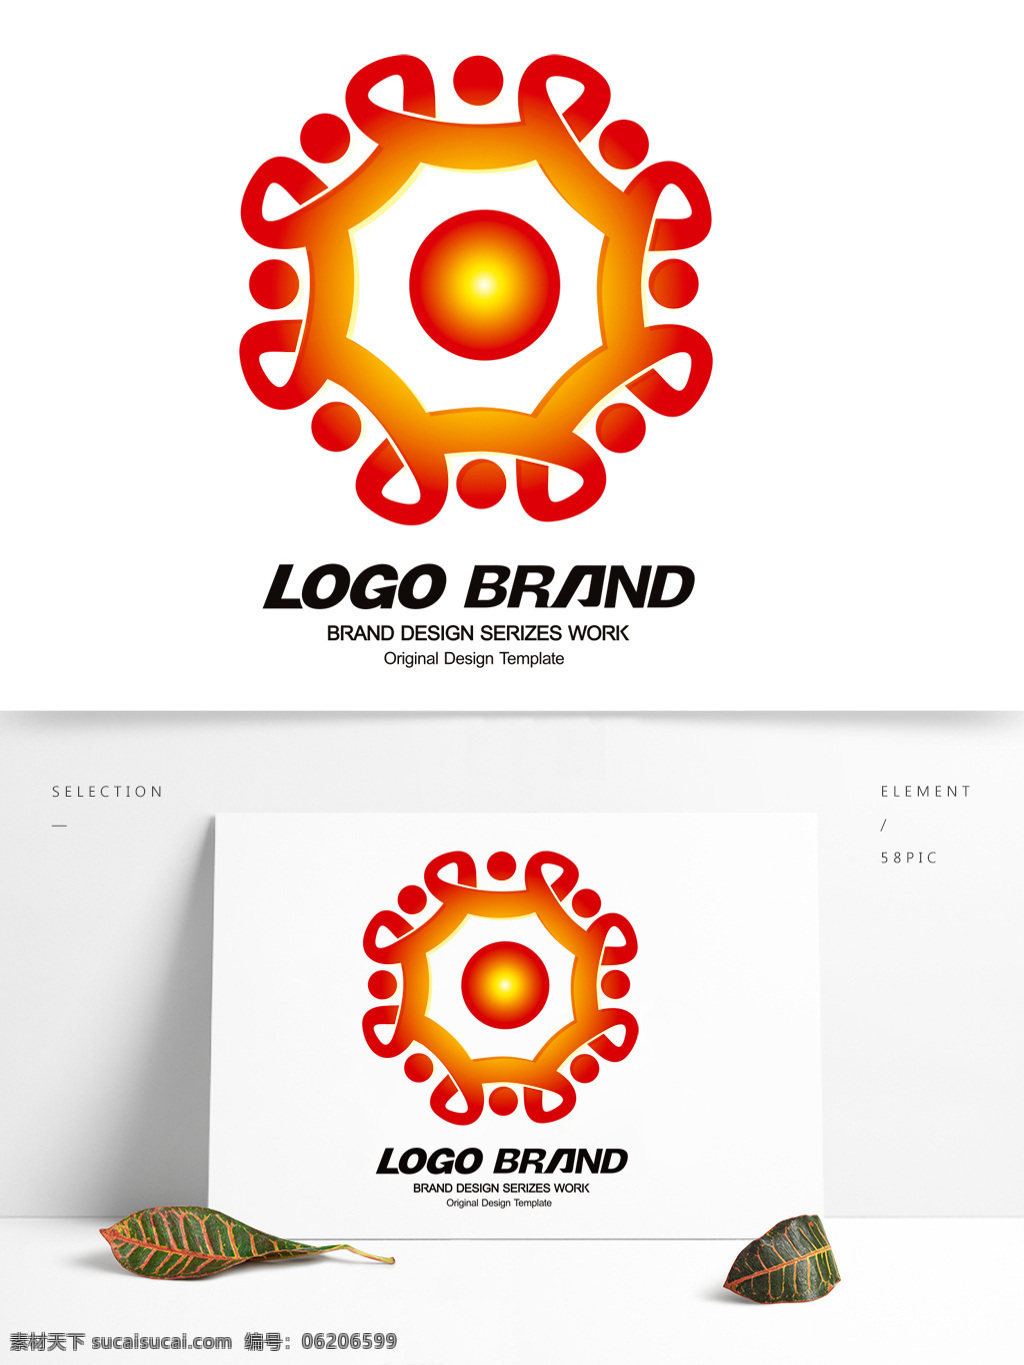 矢量 创意 红 黄 中国结 公司 标志 logo w 字母 标志设计 公司标志设计 企业 会徽标志设计 企业标志设计